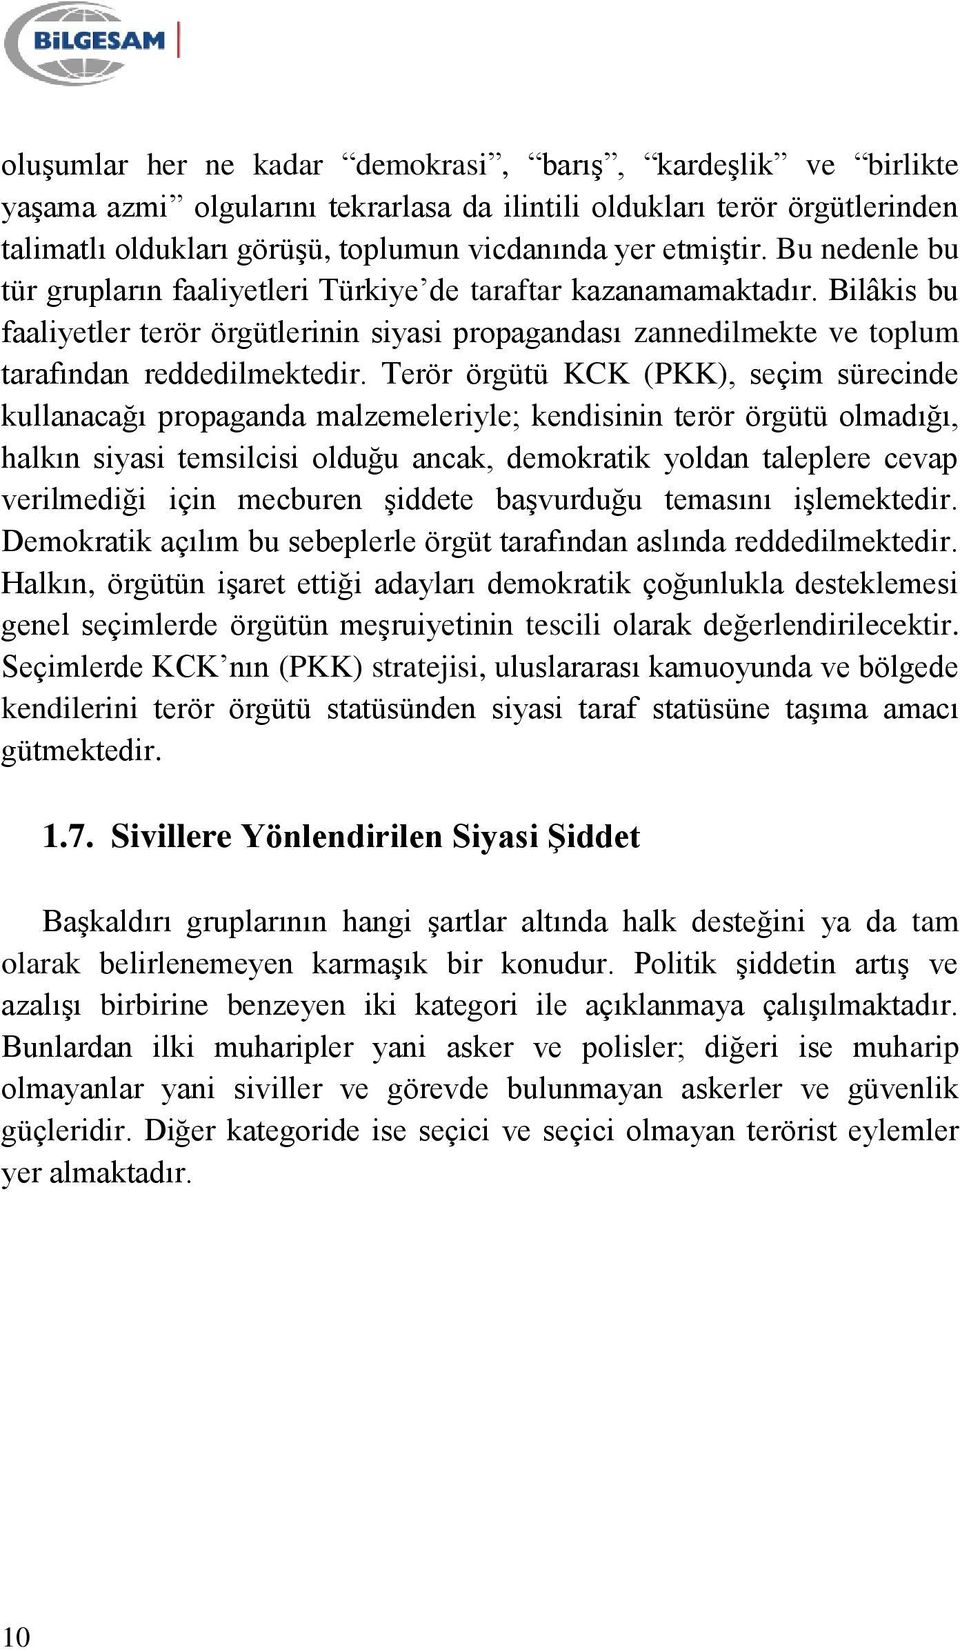 Terör örgütü KCK (PKK), seçim sürecinde kullanacağı propaganda malzemeleriyle; kendisinin terör örgütü olmadığı, halkın siyasi temsilcisi olduğu ancak, demokratik yoldan taleplere cevap verilmediği